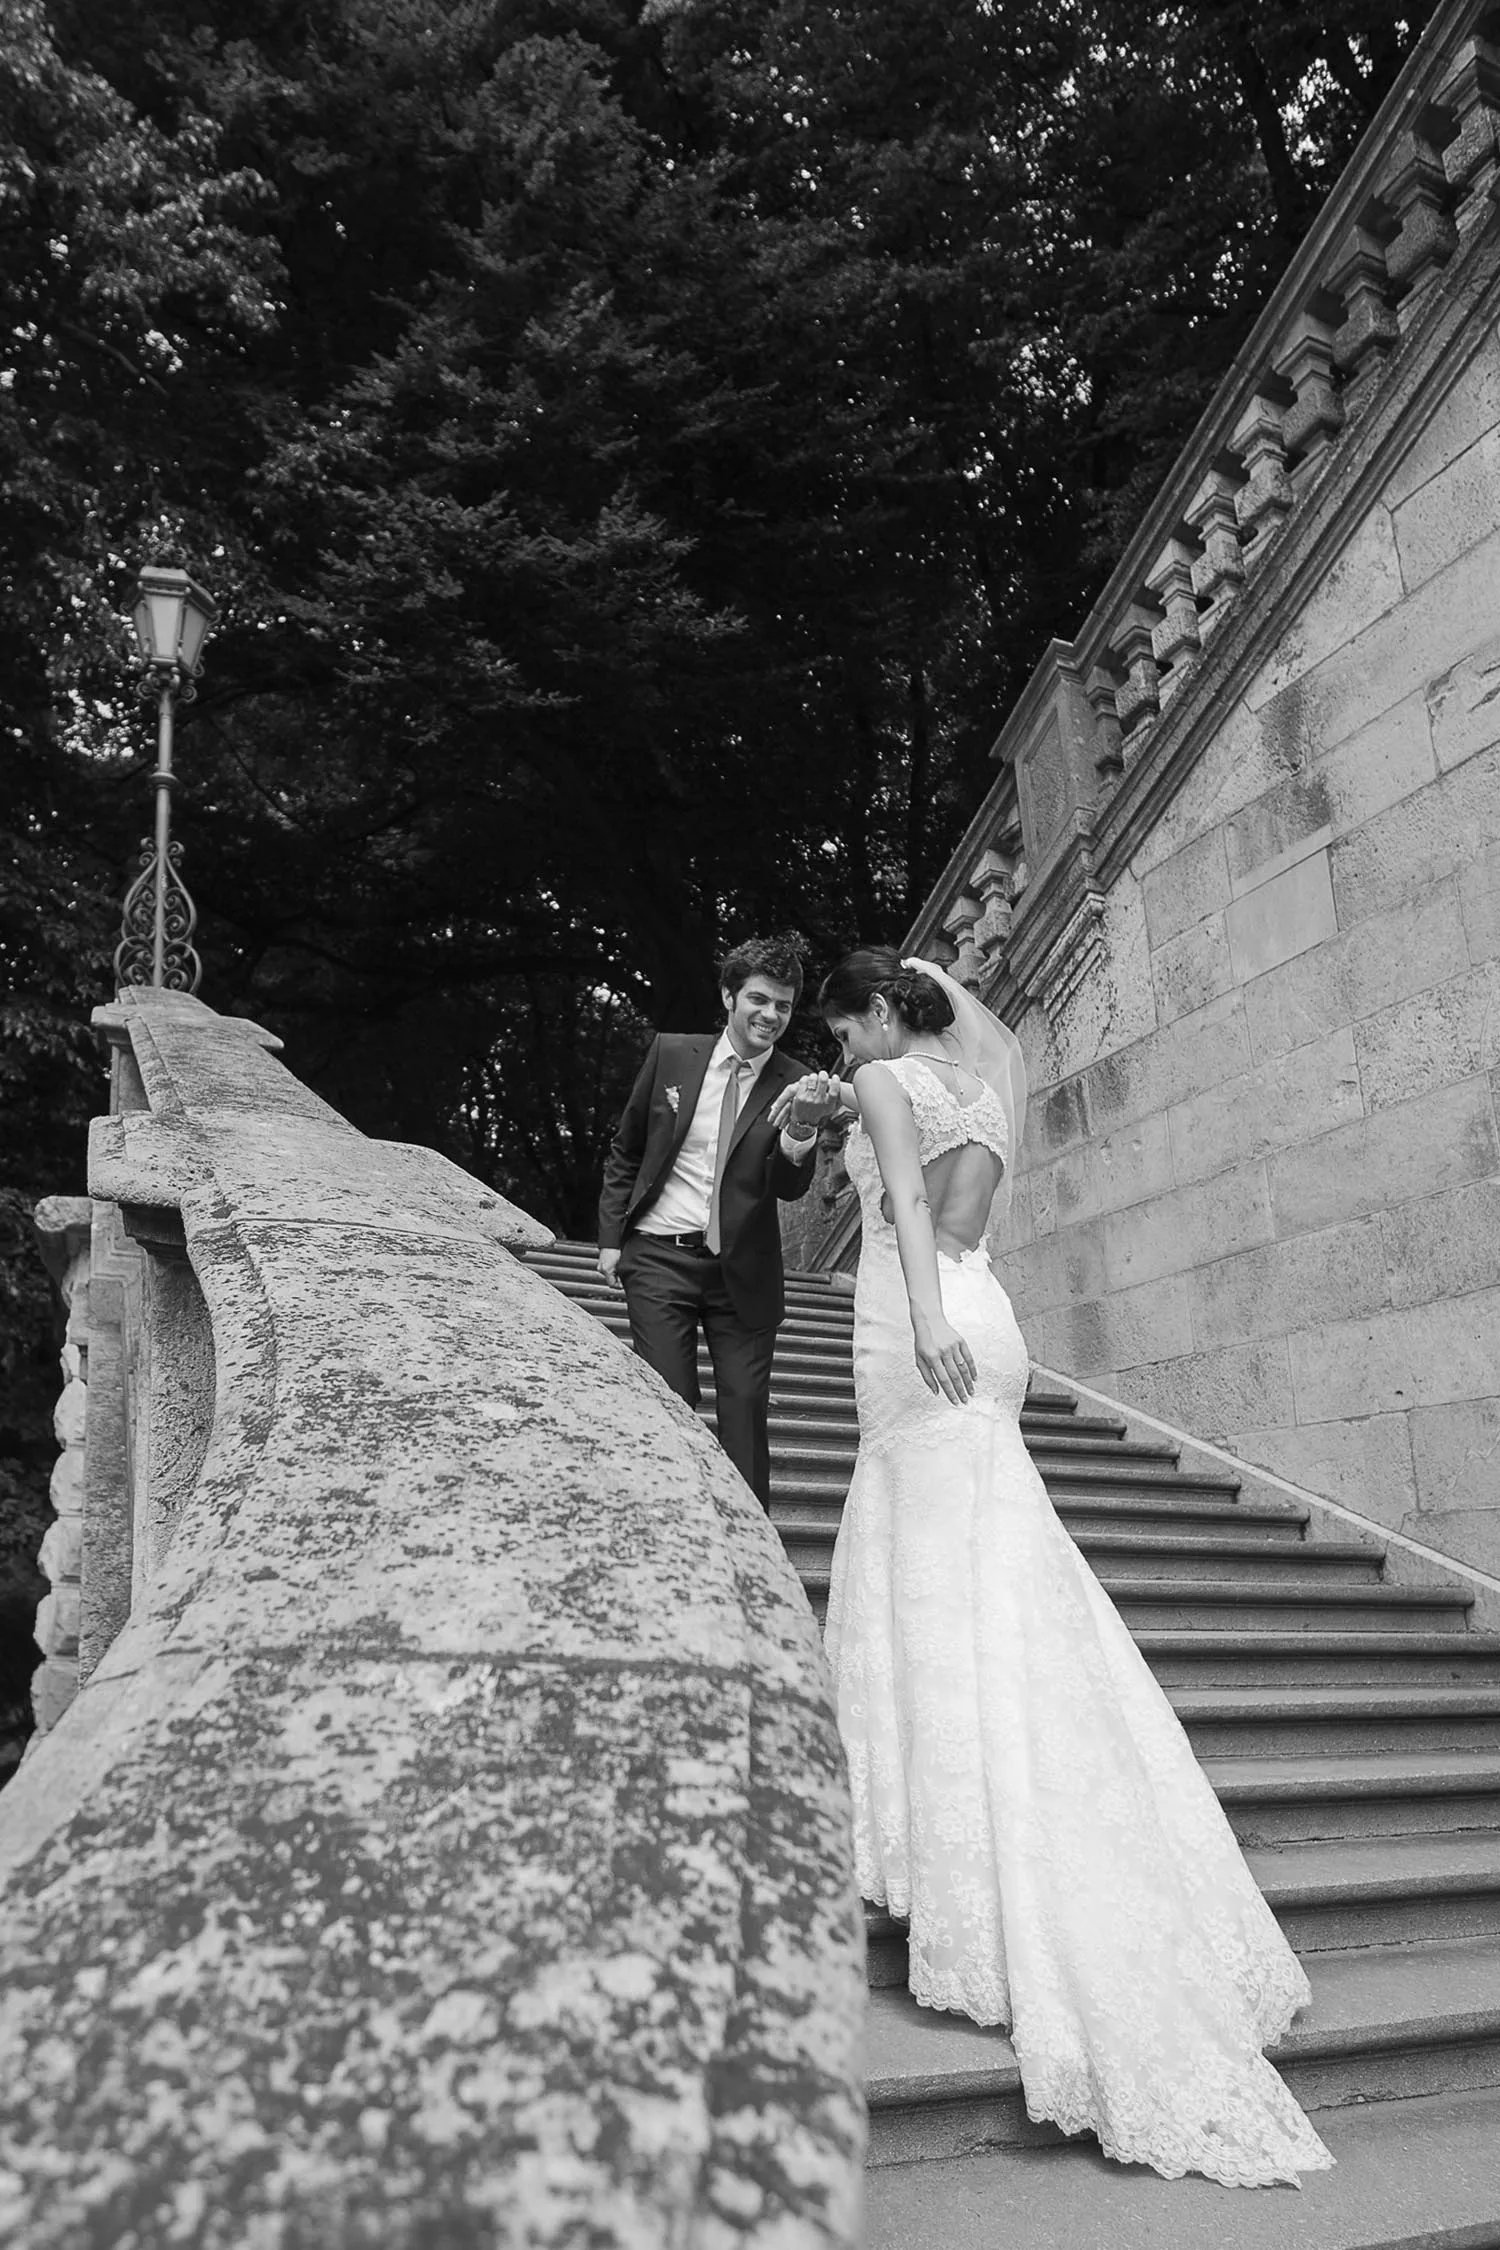 Hochzeitsfotograf Muenchen Preise Hochzeitsfotografie Muenchen Hochzeitsfotos Hochzeit Muenchen Heiraten Fotoshooting Muenchen